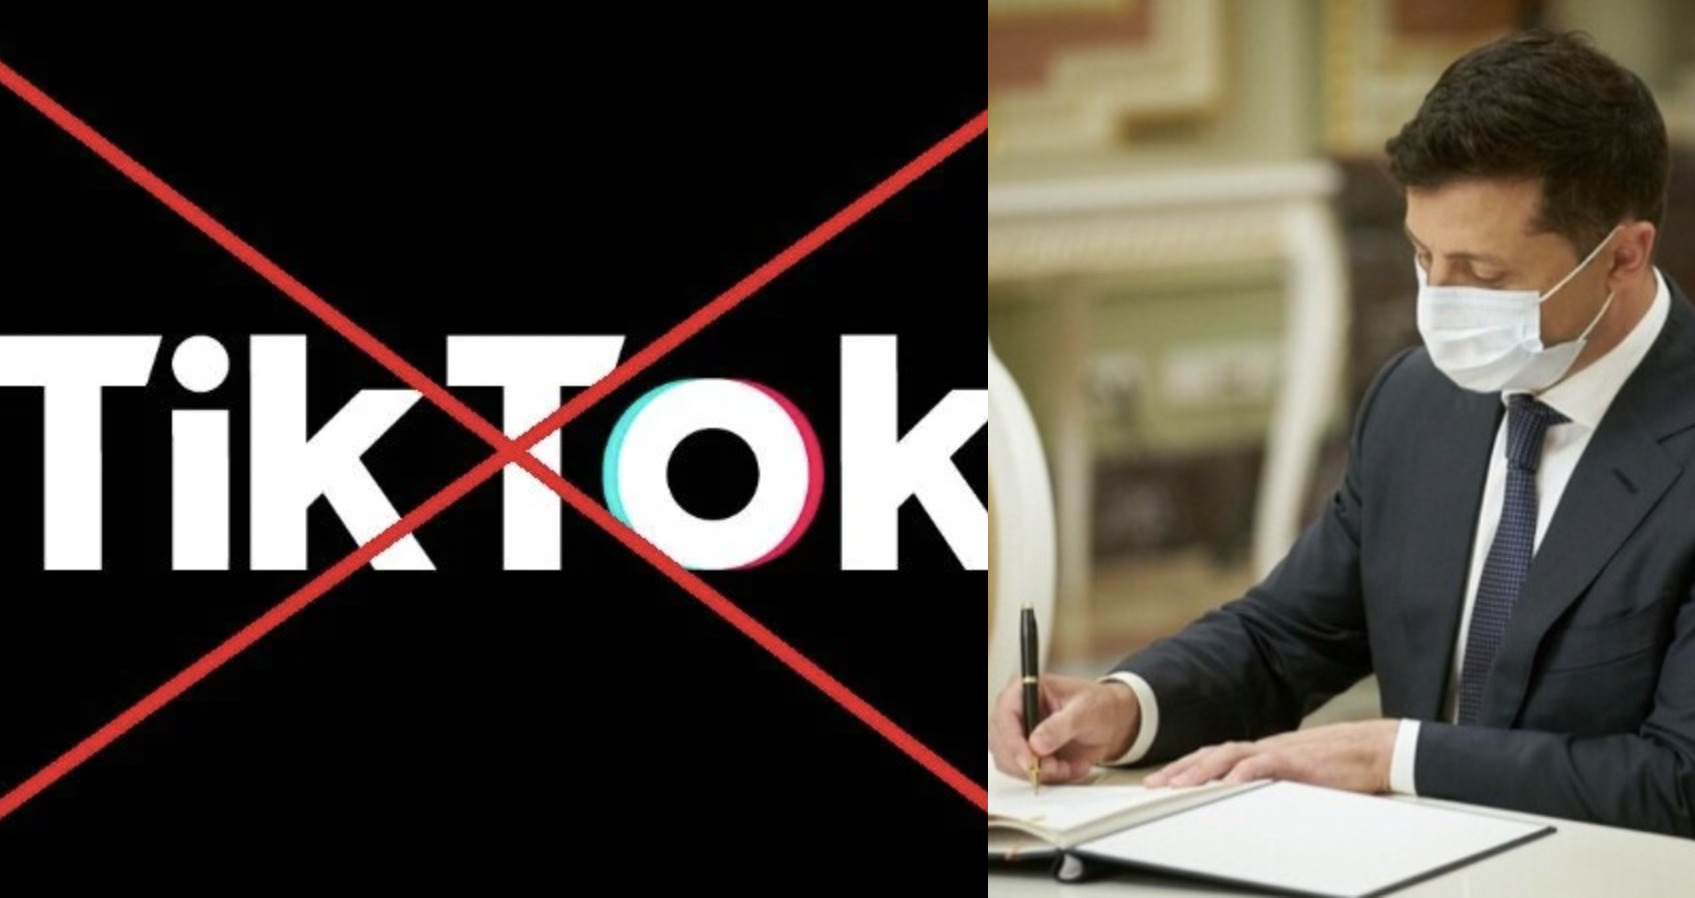 Негайно заборонити соціальну мережу ТiкTok: Зеленський вже в курсі – дитячий омбудсмен відреагував